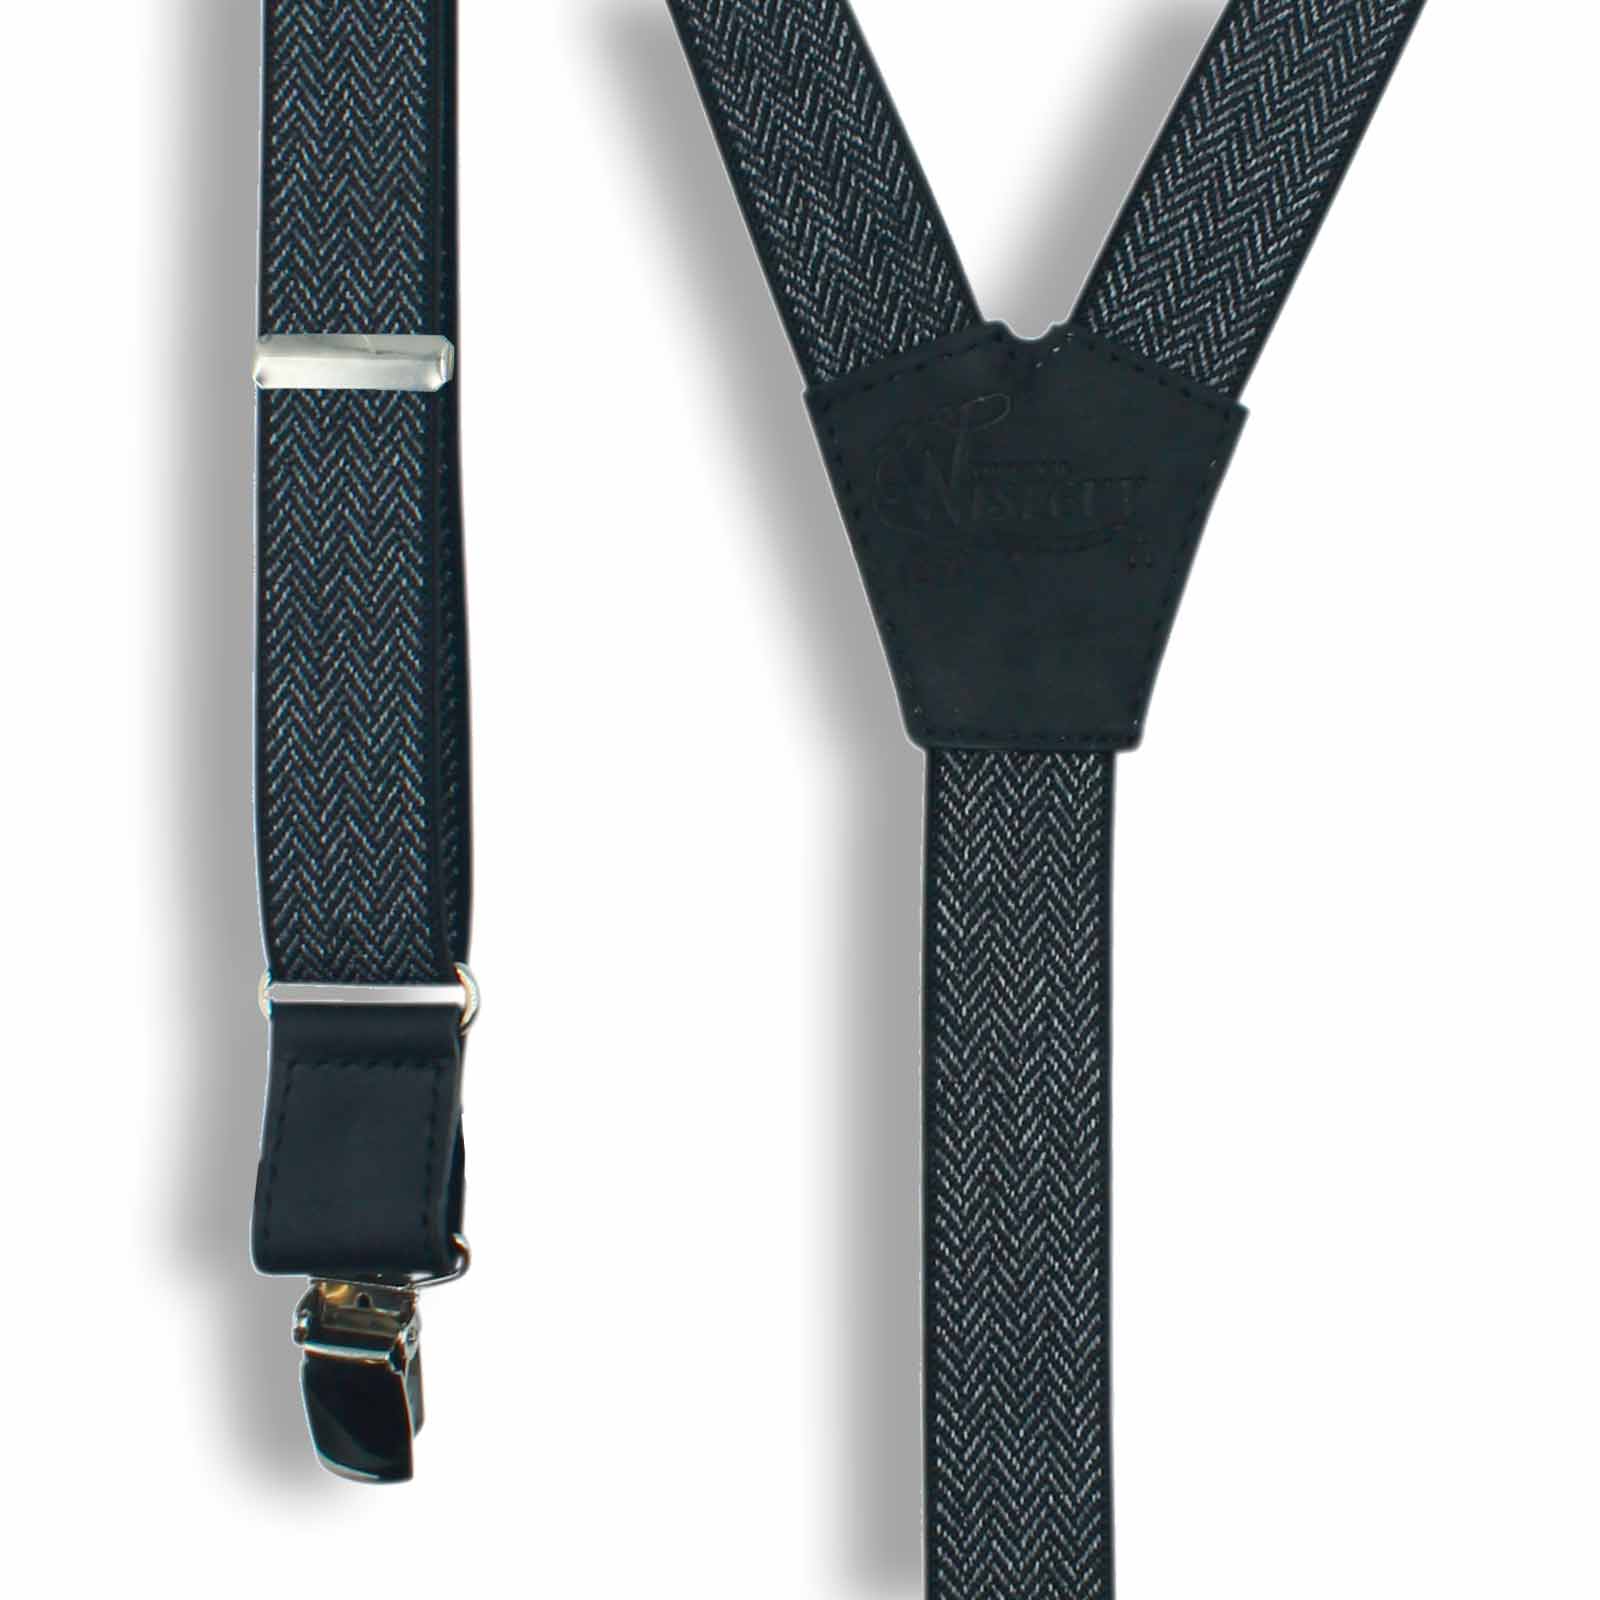 The Herringbone Black Suspenders slim straps (1 inch/2.54 cm) - Wiseguy Suspenders